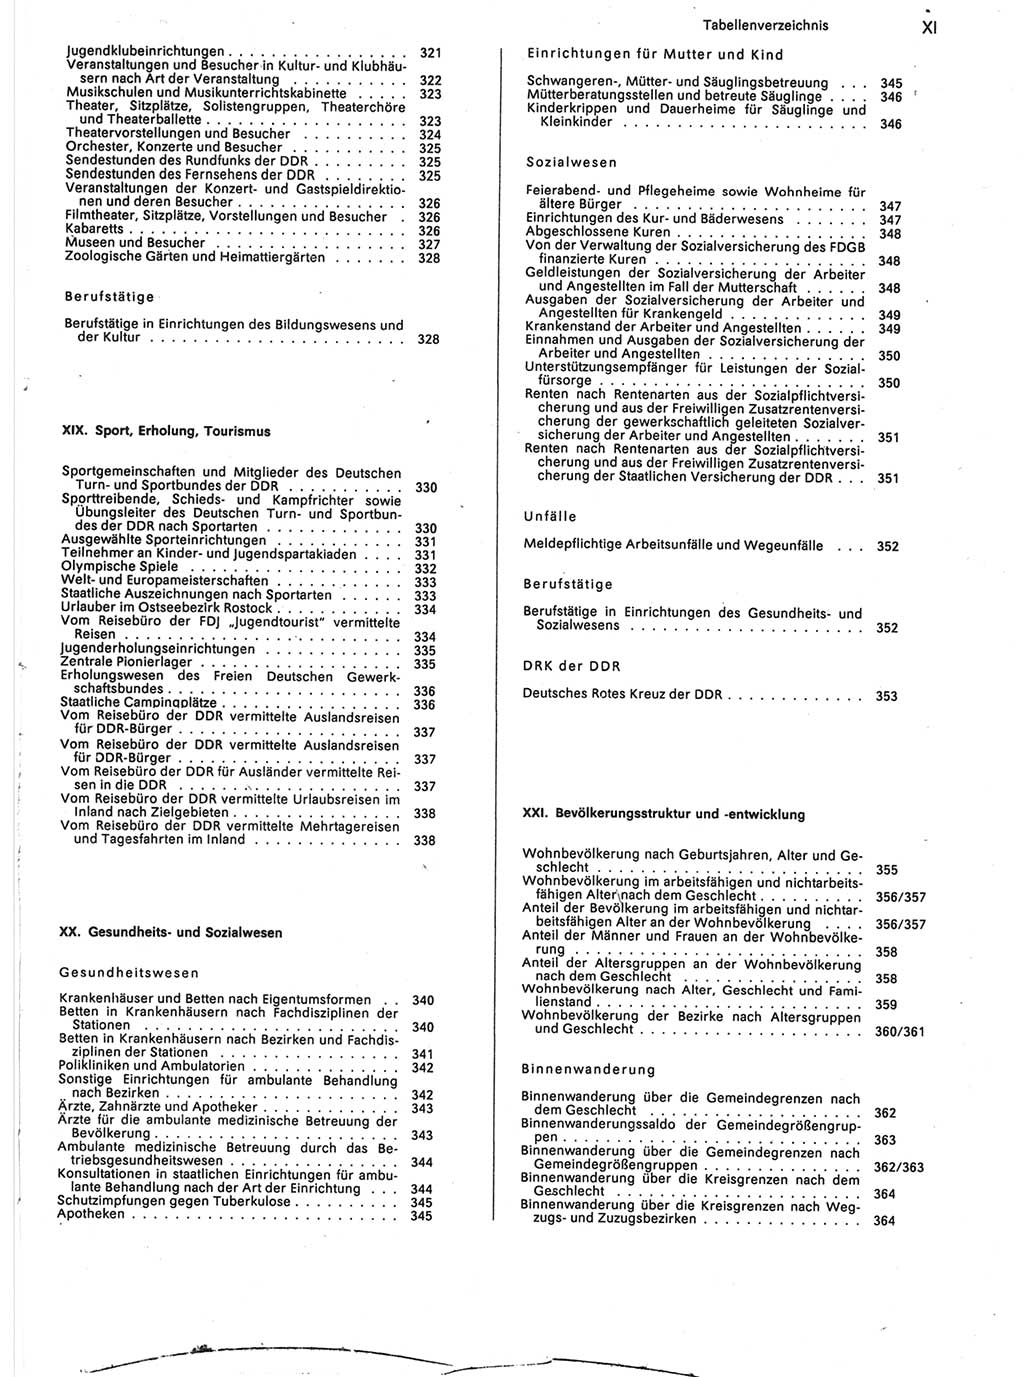 Statistisches Jahrbuch der Deutschen Demokratischen Republik (DDR) 1988, Seite 11 (Stat. Jb. DDR 1988, S. 11)